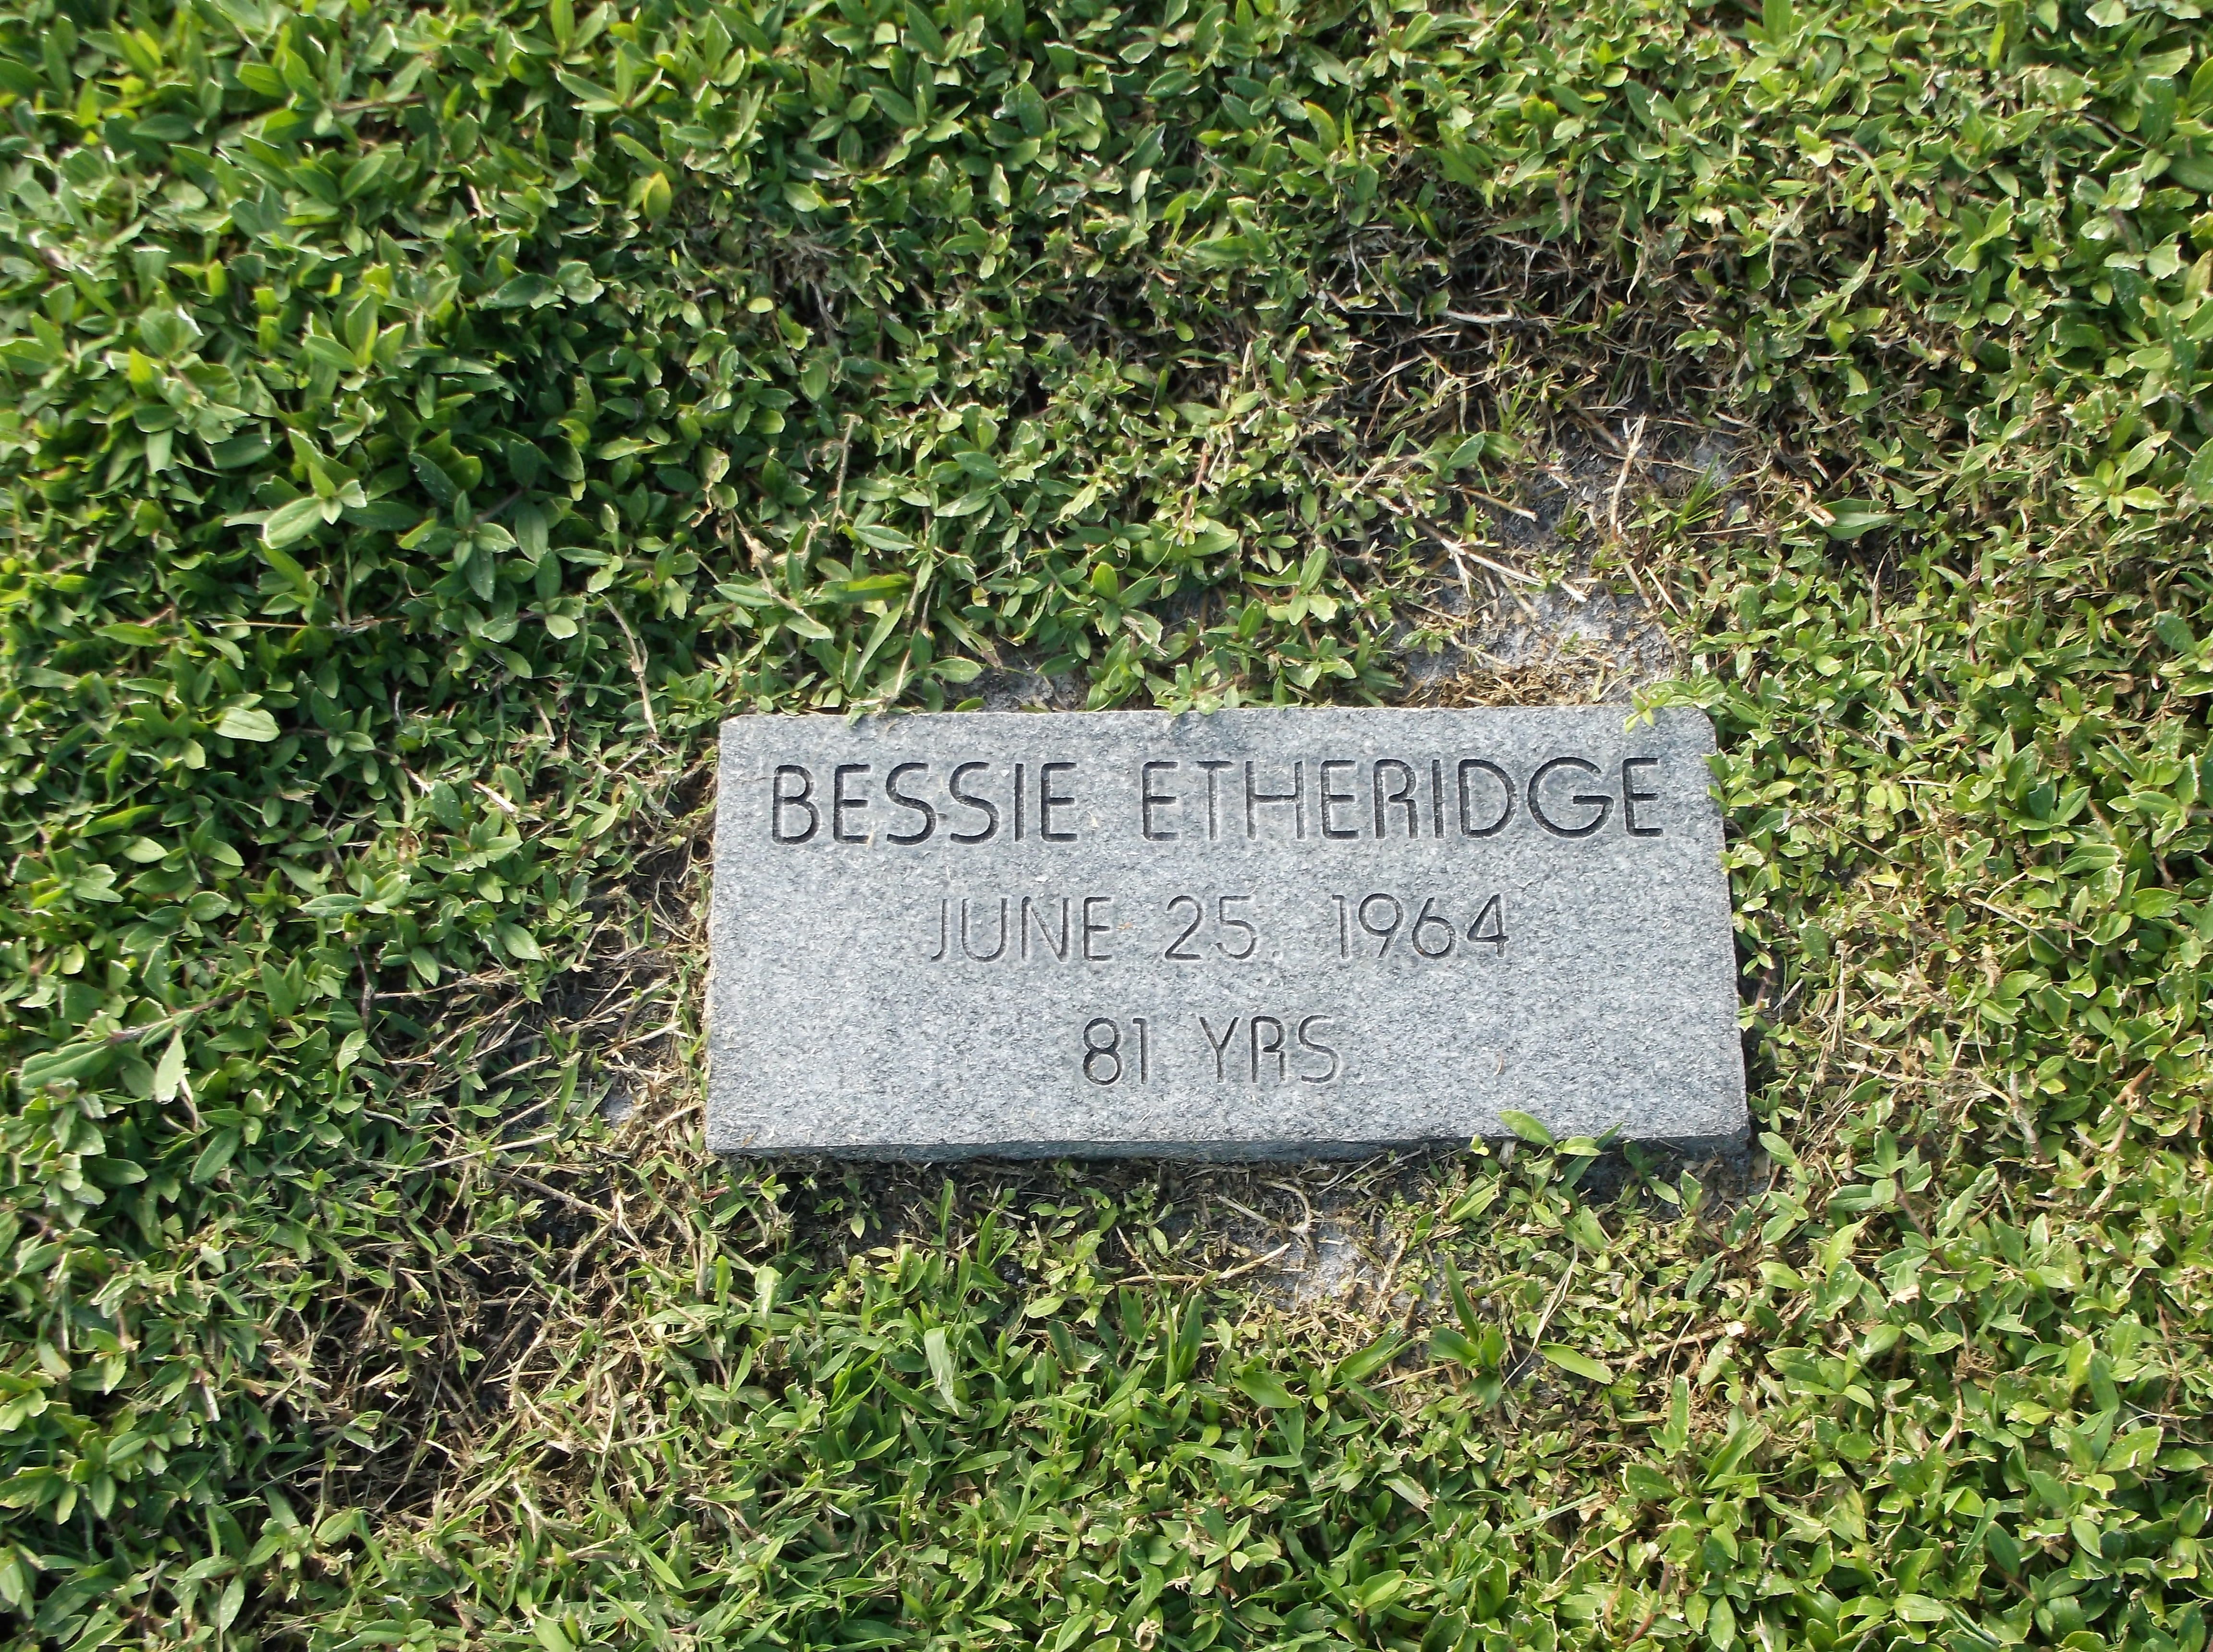 Bessie Etheridge